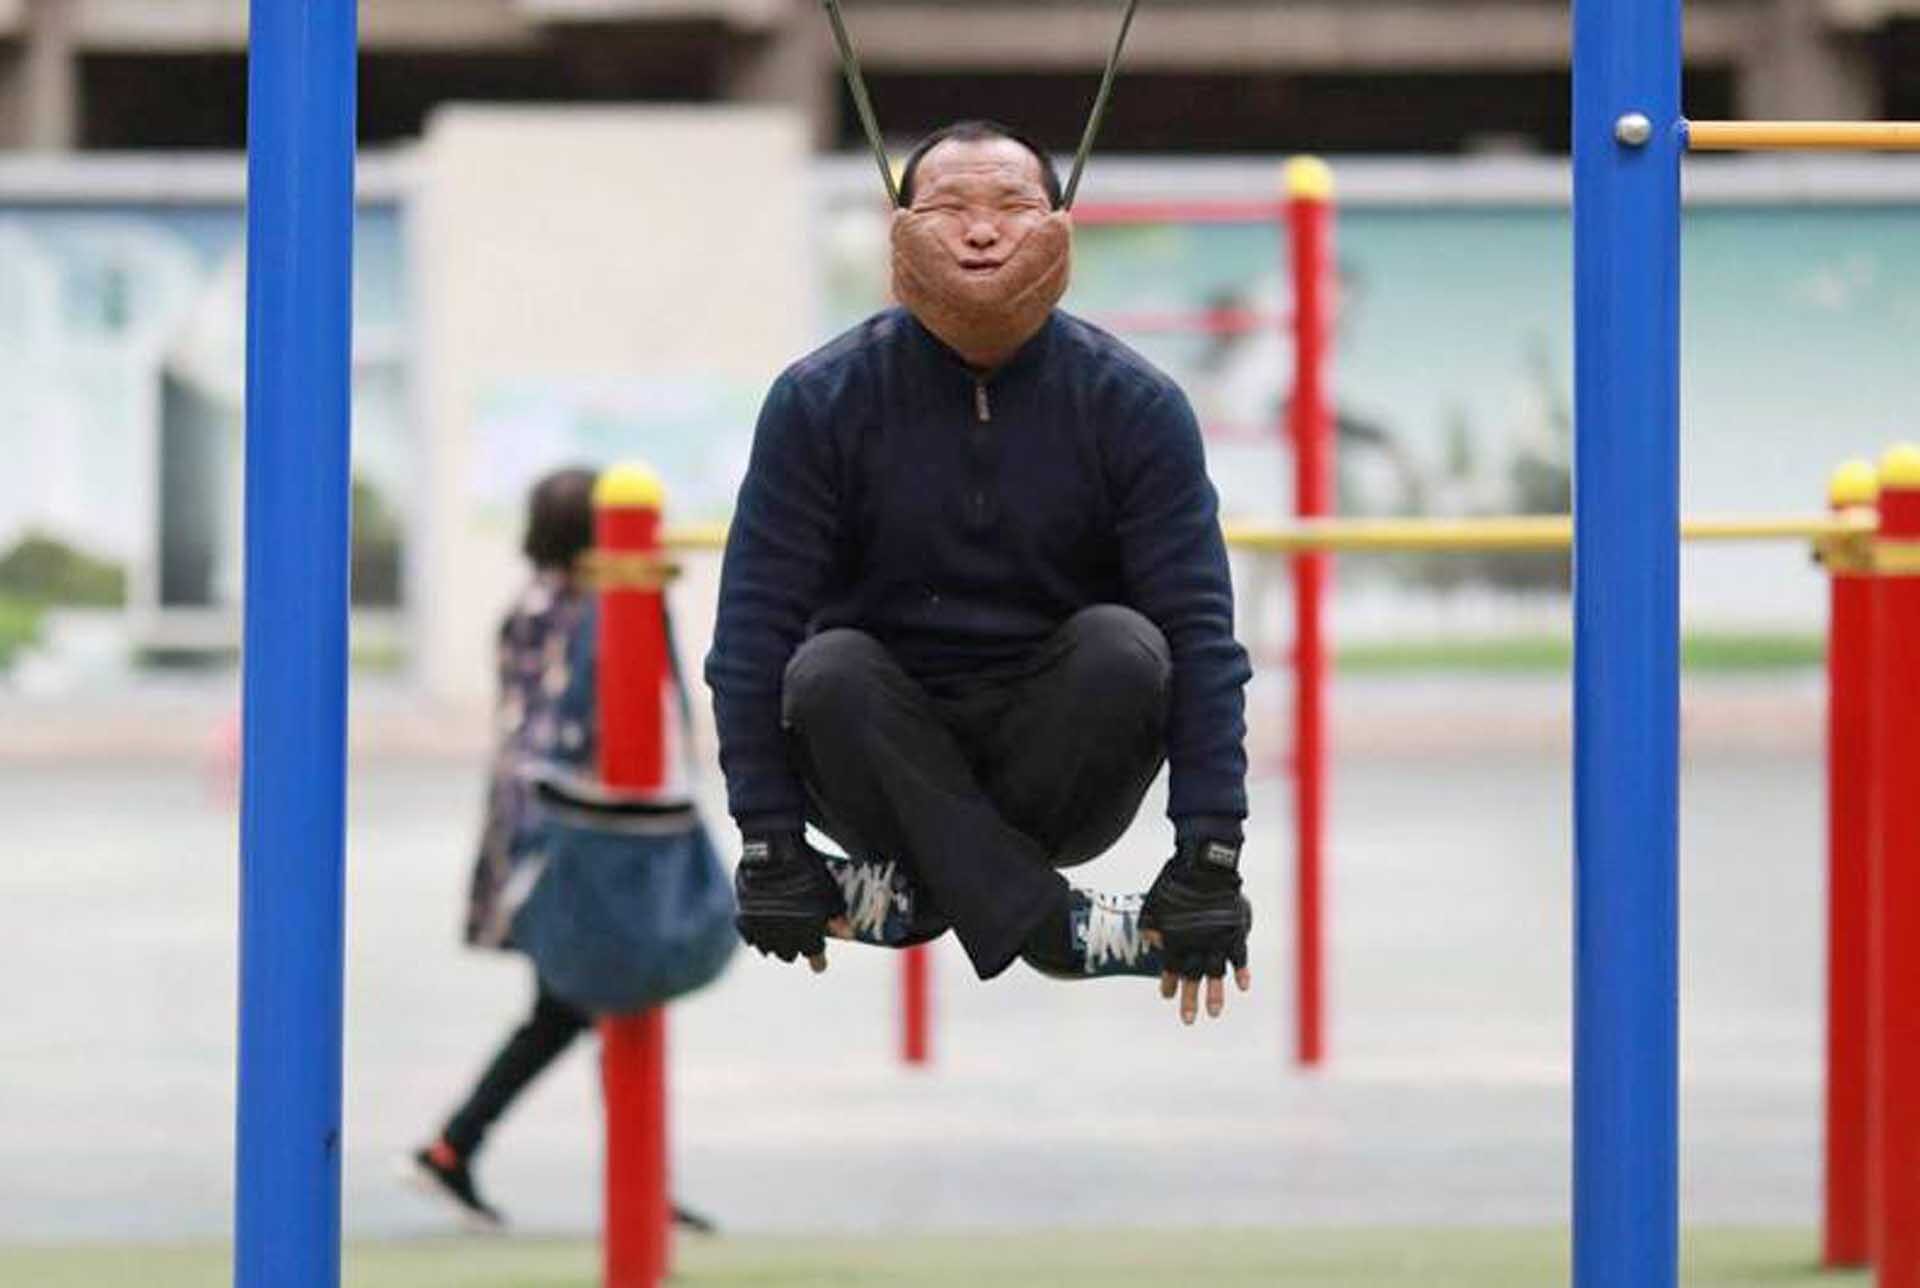 ชายจีนดับคาอุปกรณ์ออกกำลังกาย “เชือกพยุงคาง” ผู้เชี่ยวชาญเตือนอย่าหาทำ